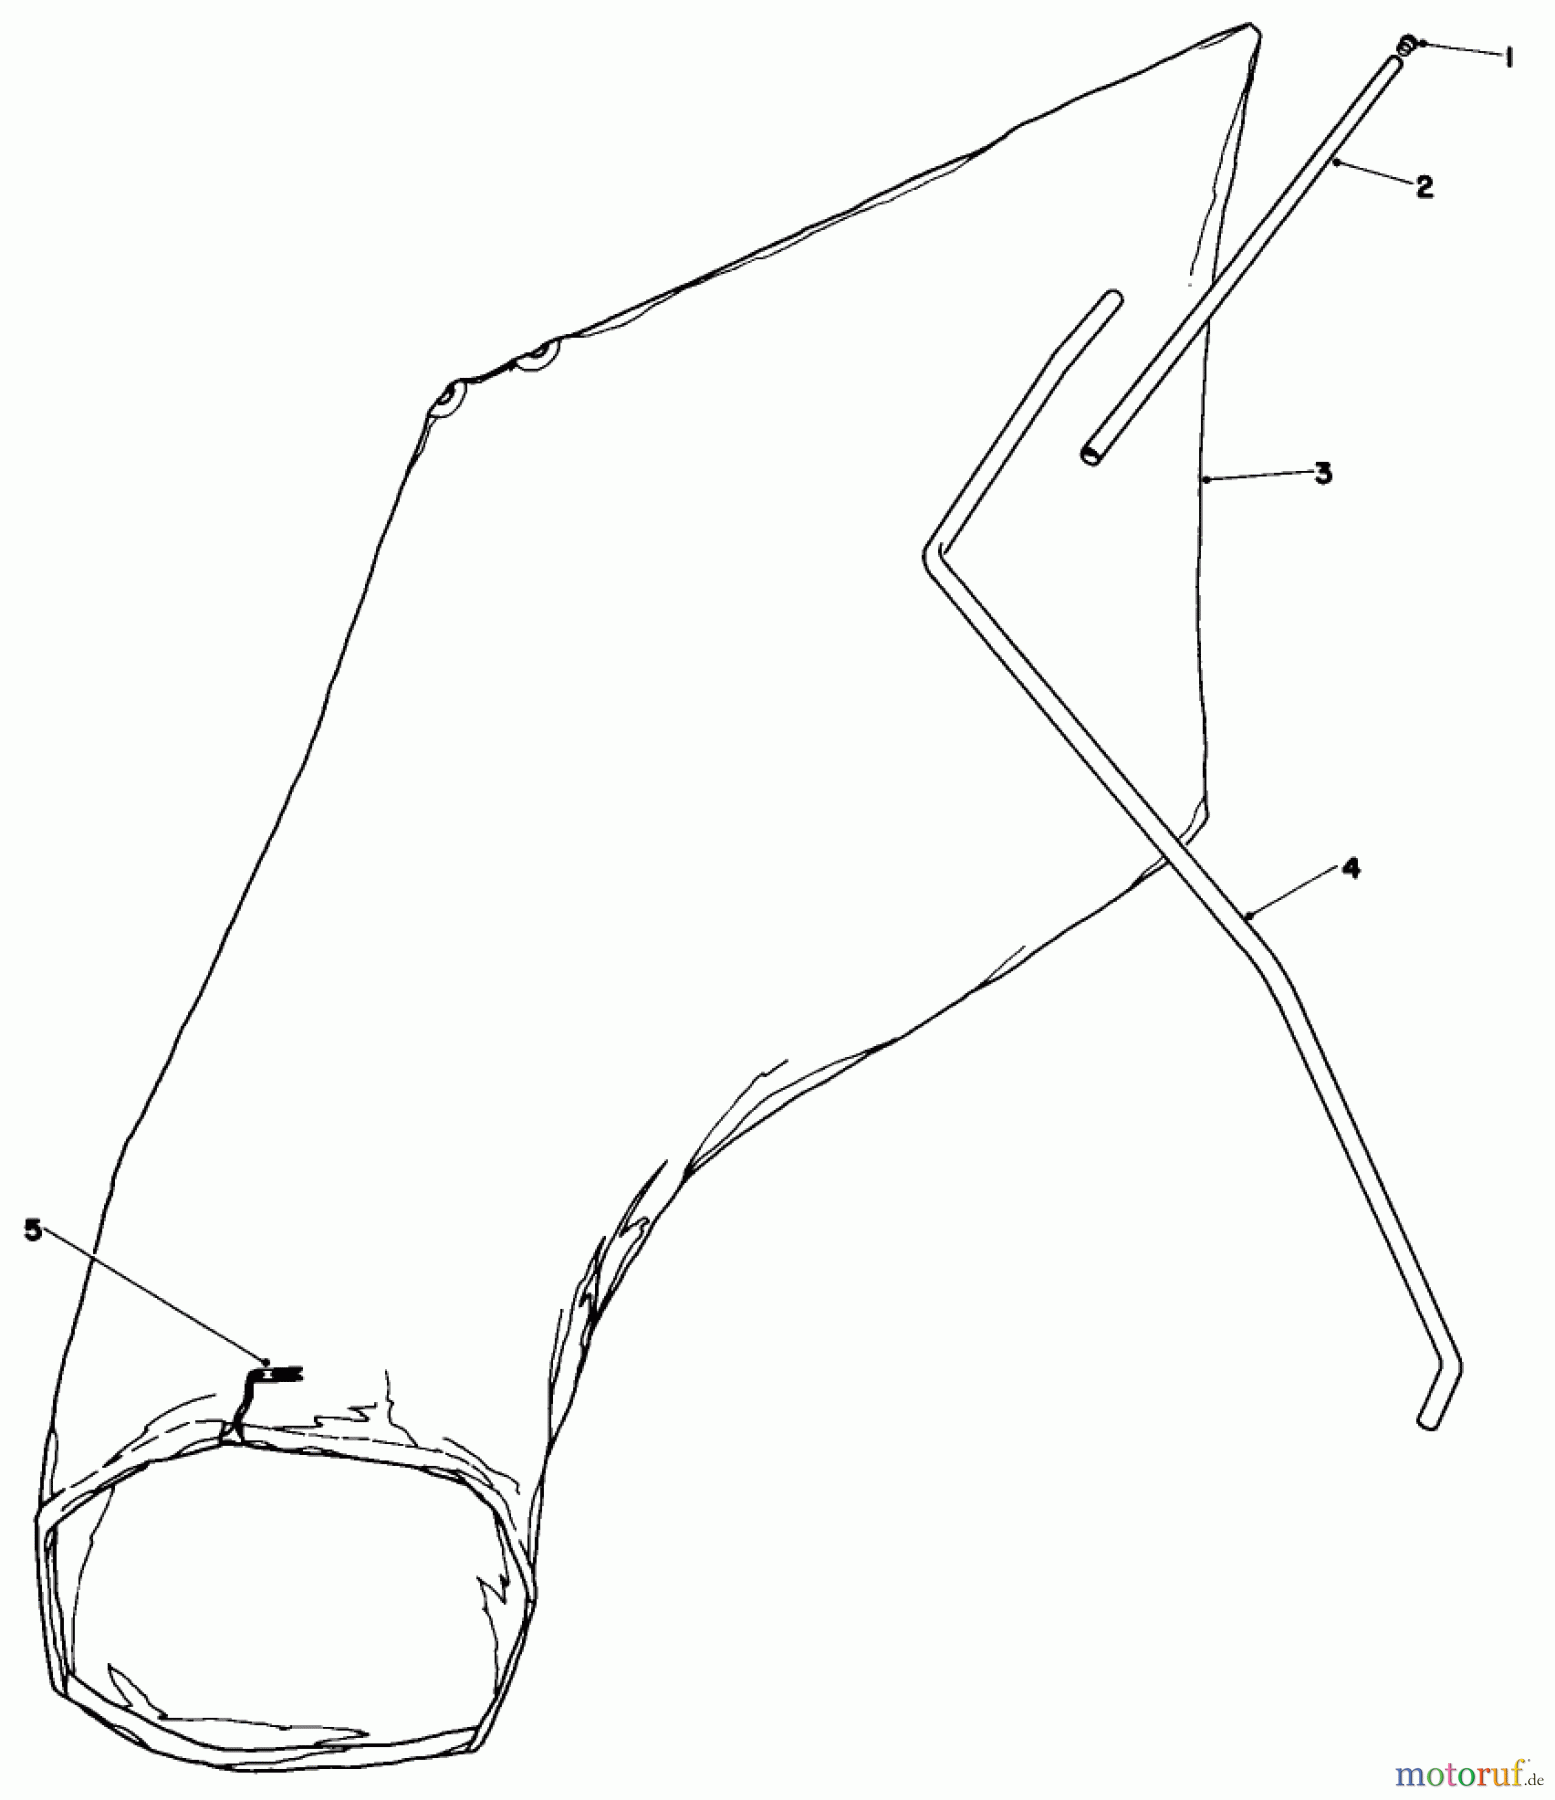  Toro Neu Mowers, Walk-Behind Seite 1 16113 - Toro Whirlwind II Lawnmower, 1979 (9000001-9999999) GIANT BAGGING KIT NO. 29-9750 (OPTIONAL)